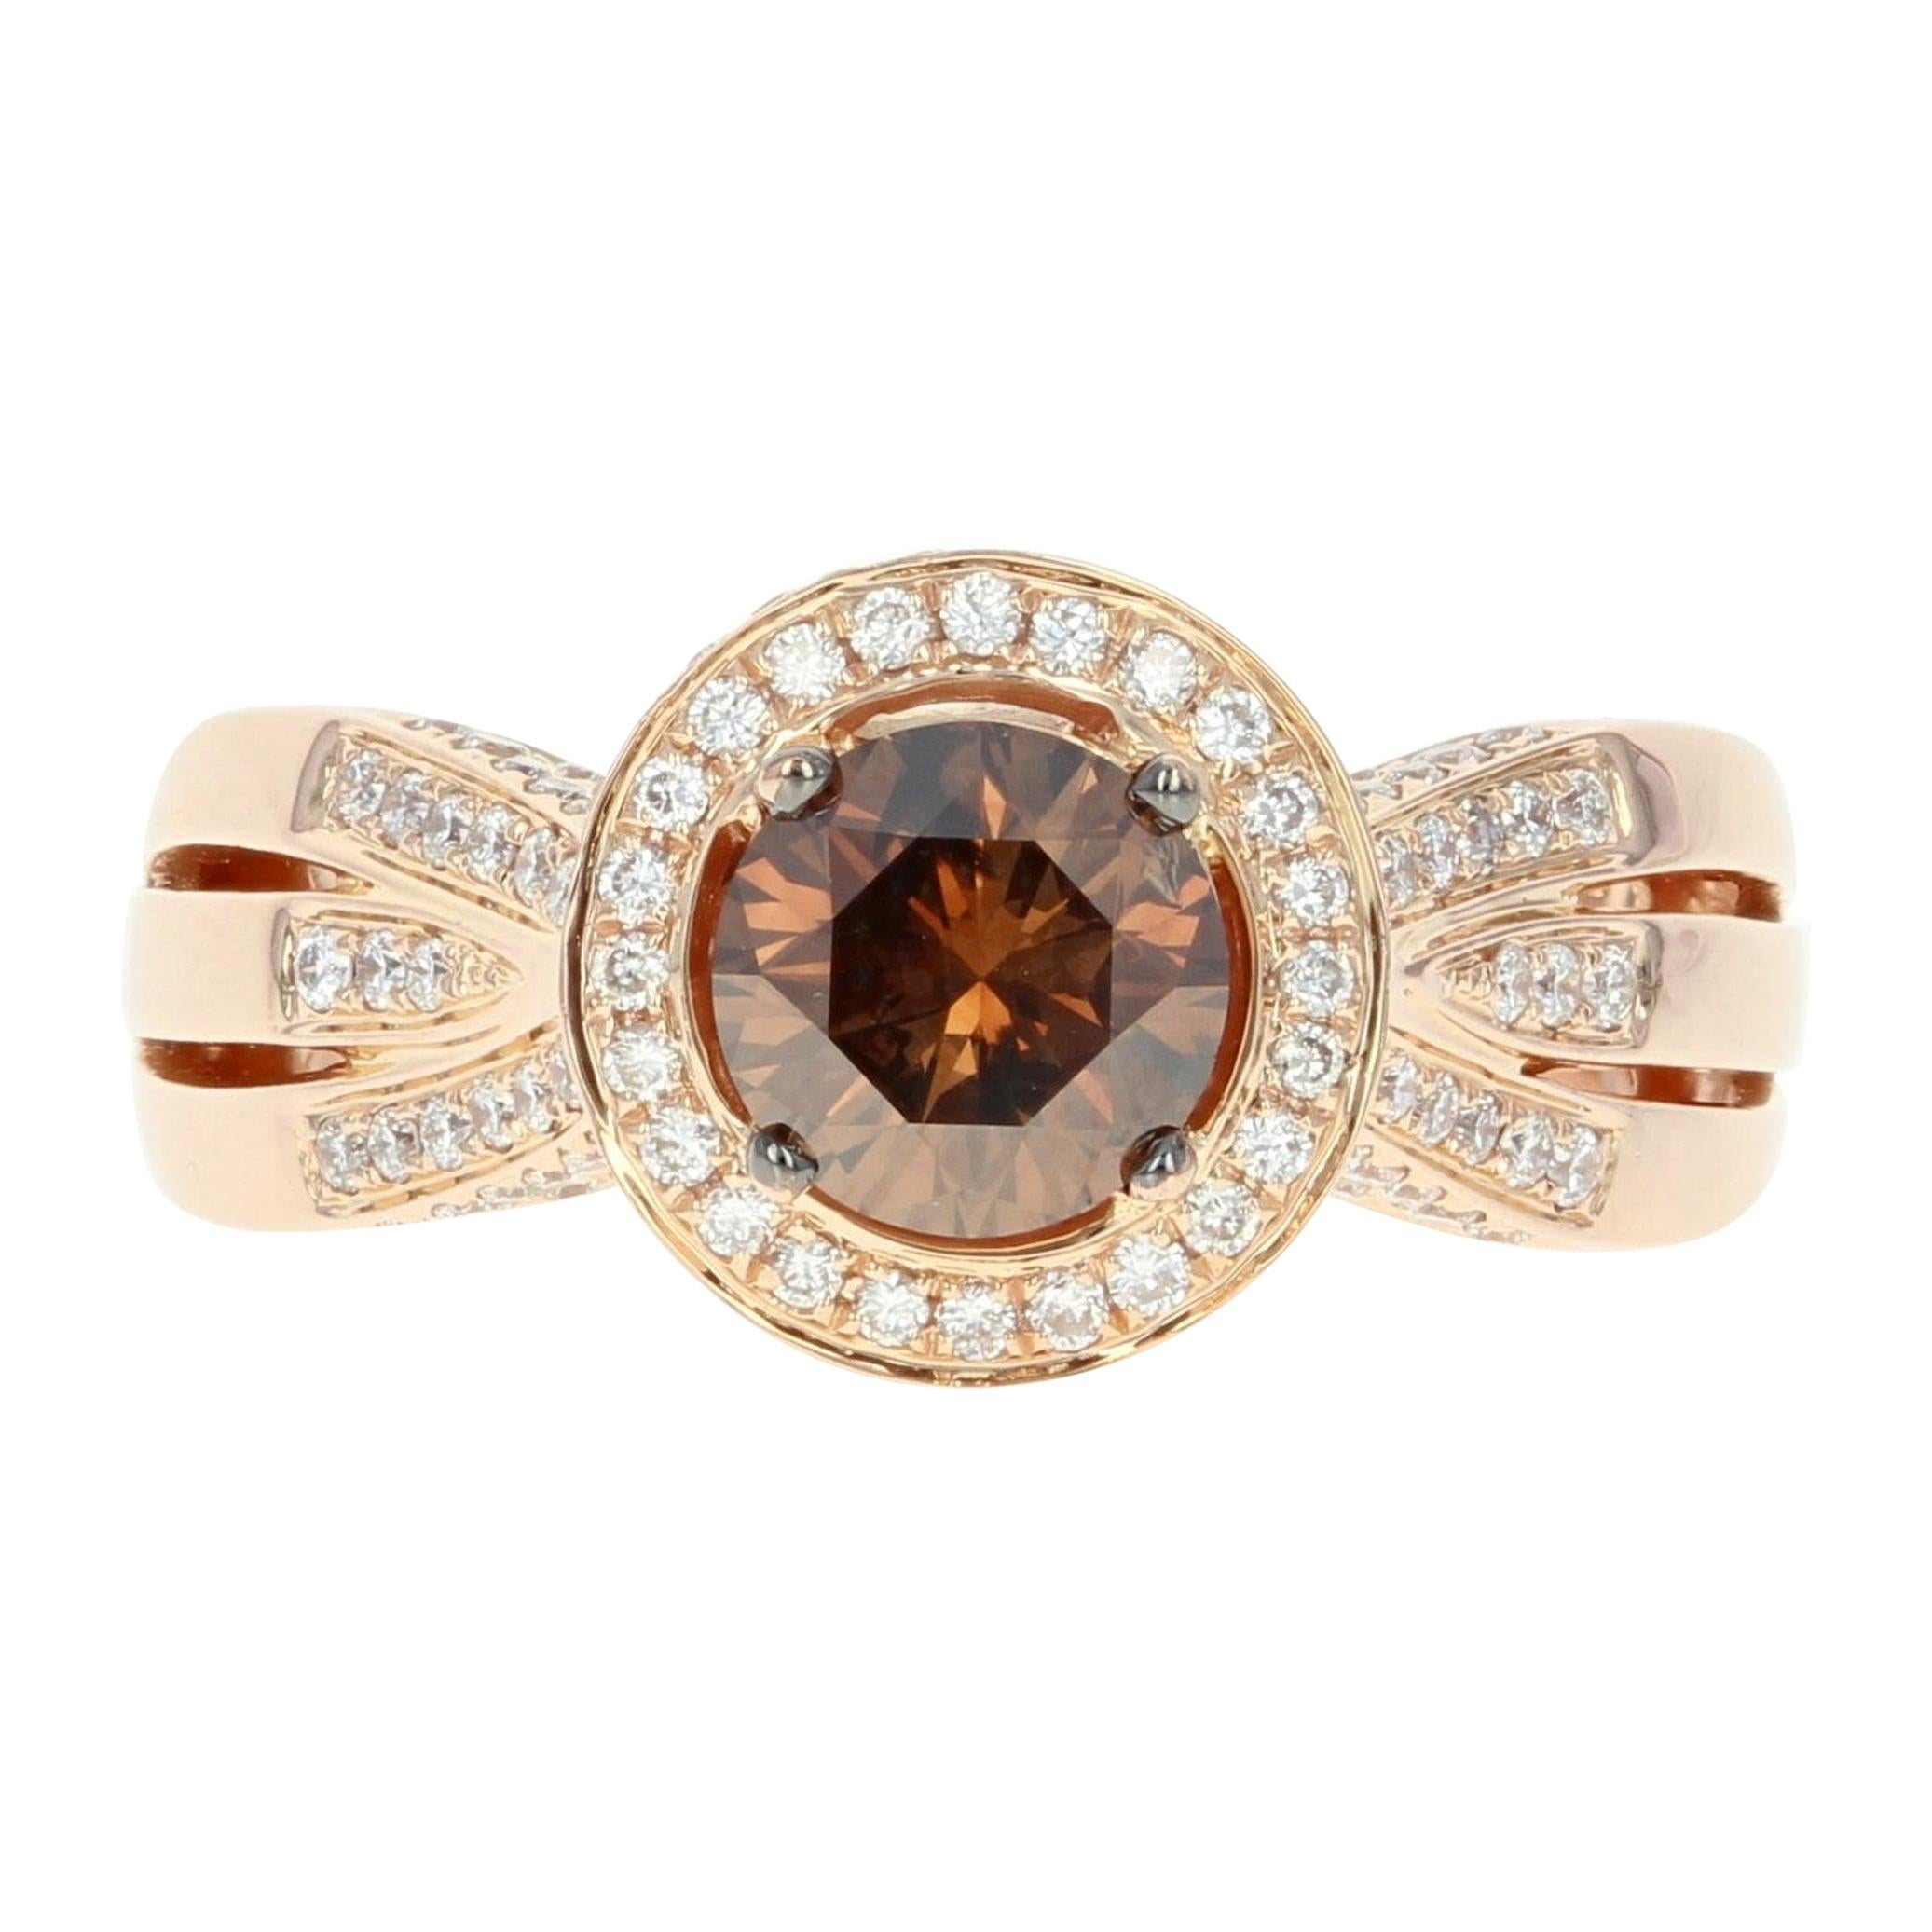 Le Vian Diamond Halo Ring, 18 Karat Rose Gold Round Cut 1.86 Carat